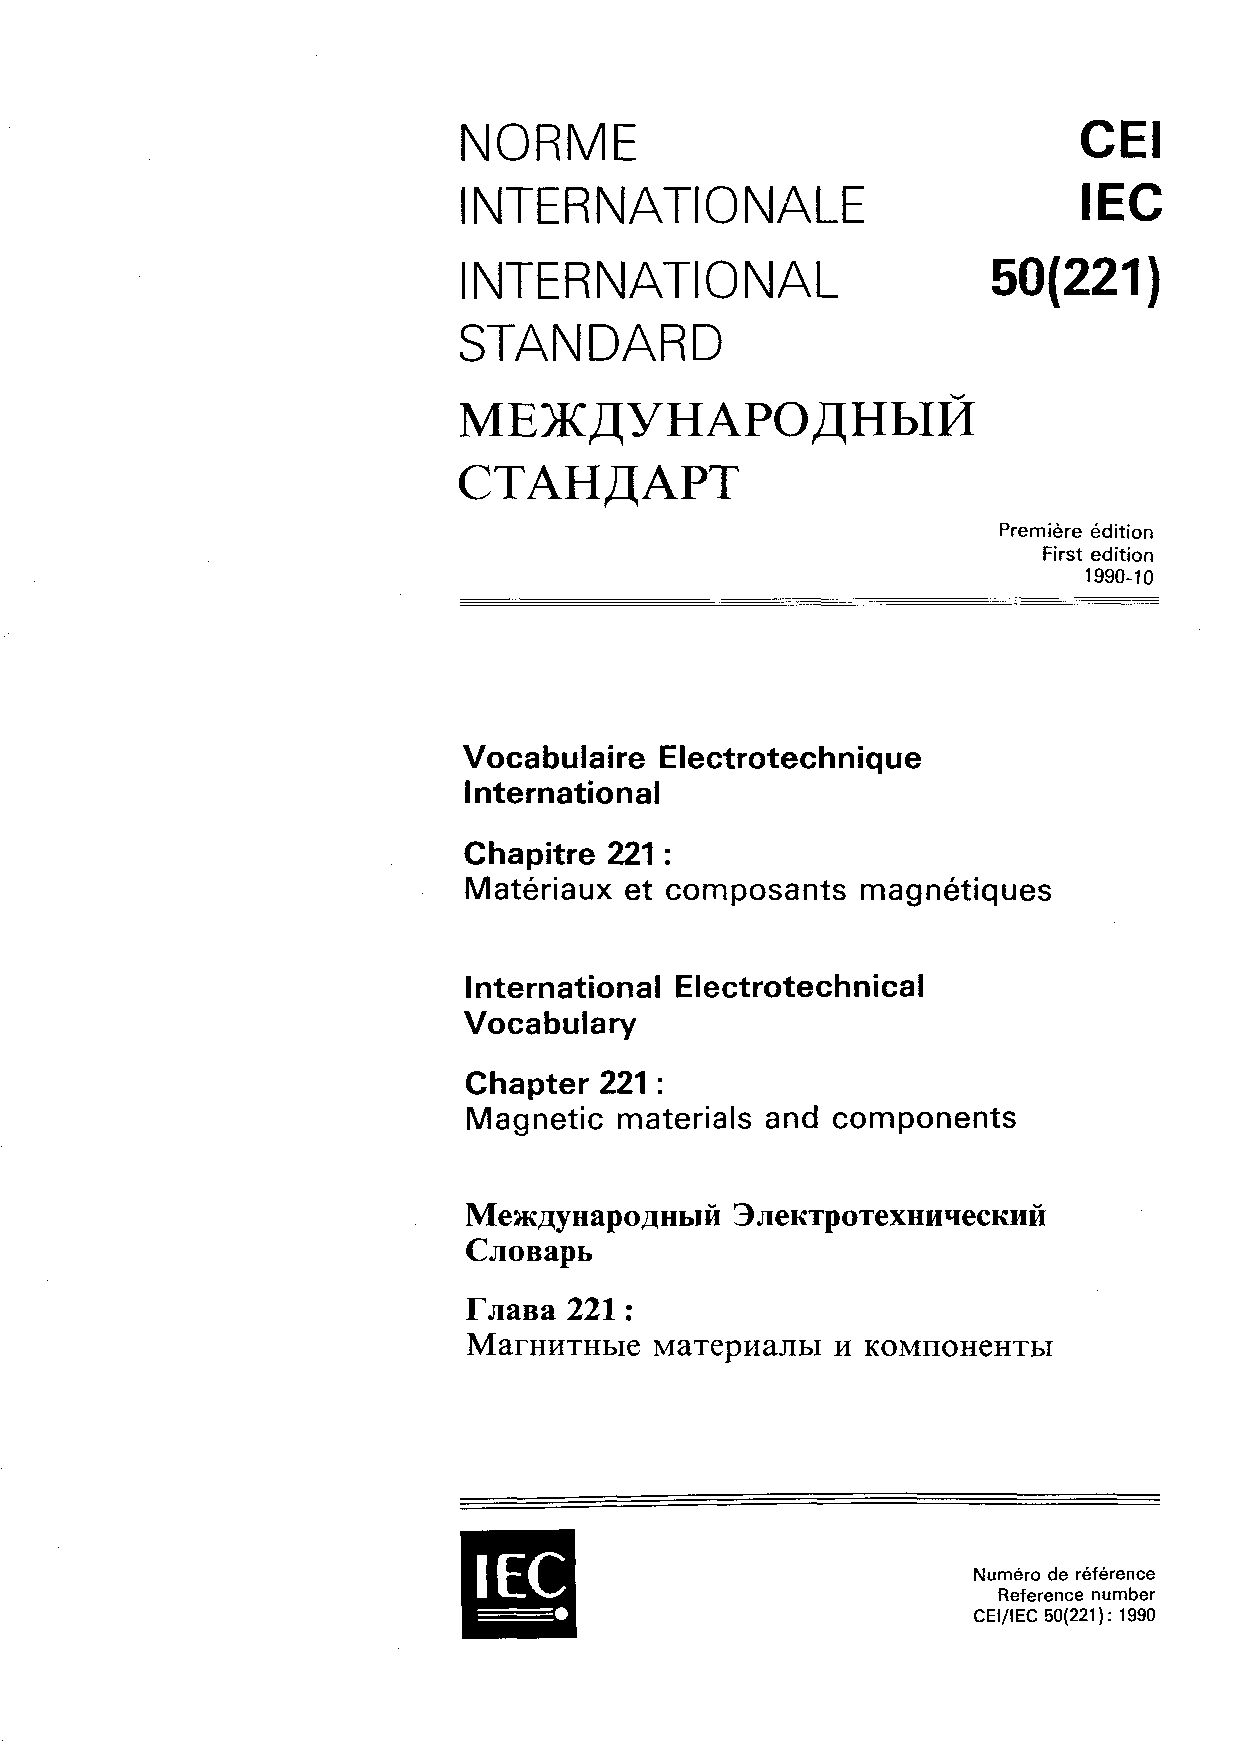 IEC 60050-221:1990